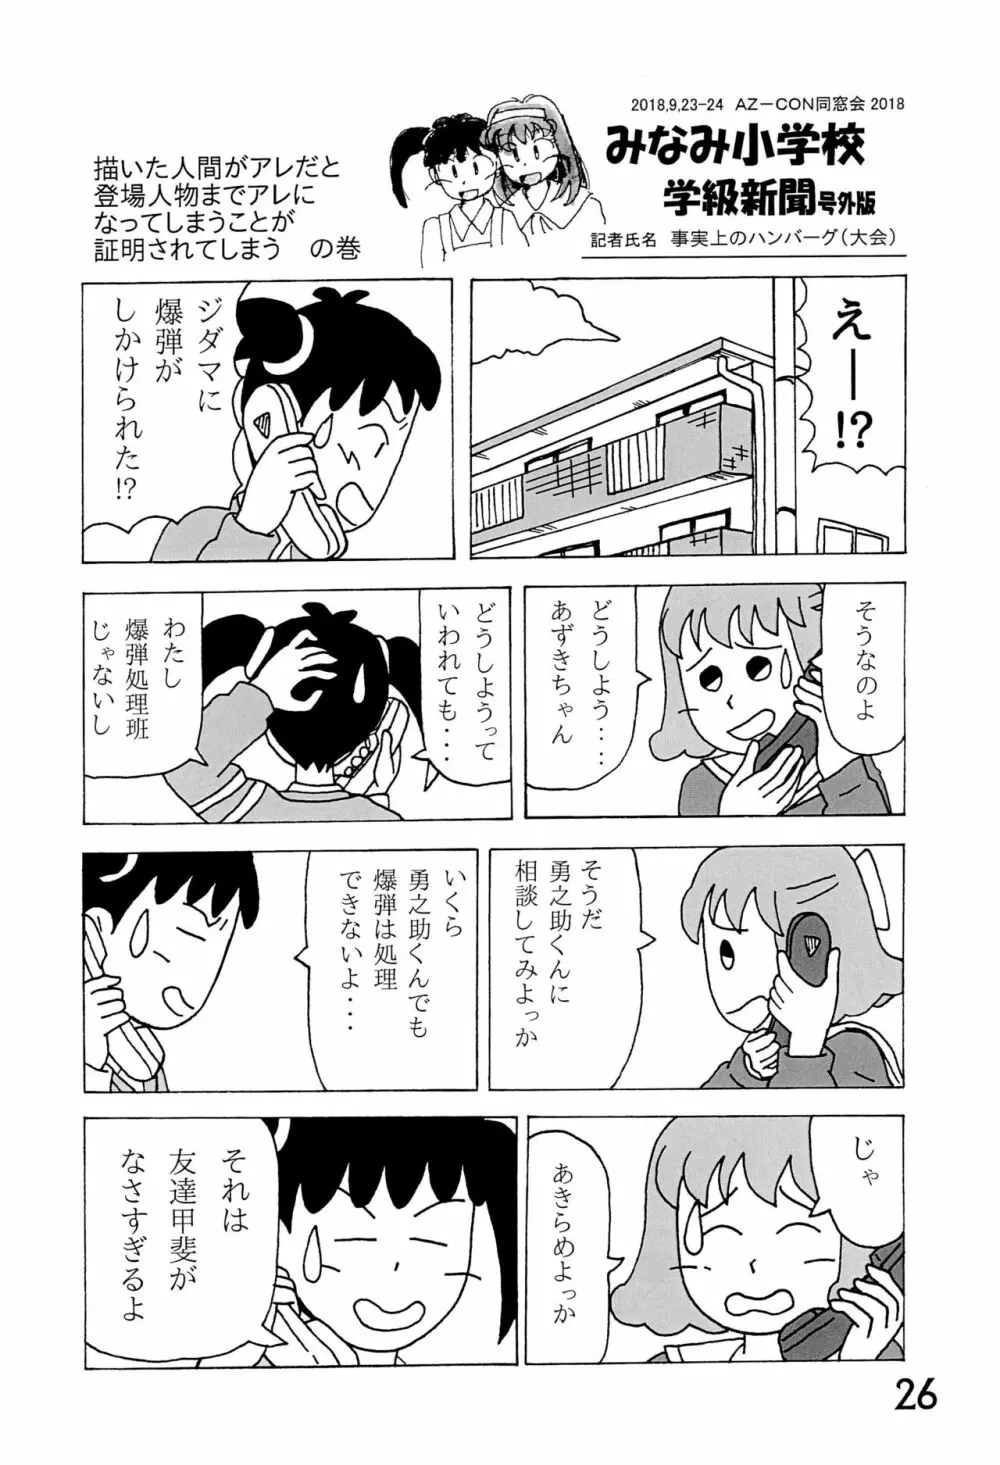 みなみ小学校学級新聞2018+号外版 26ページ